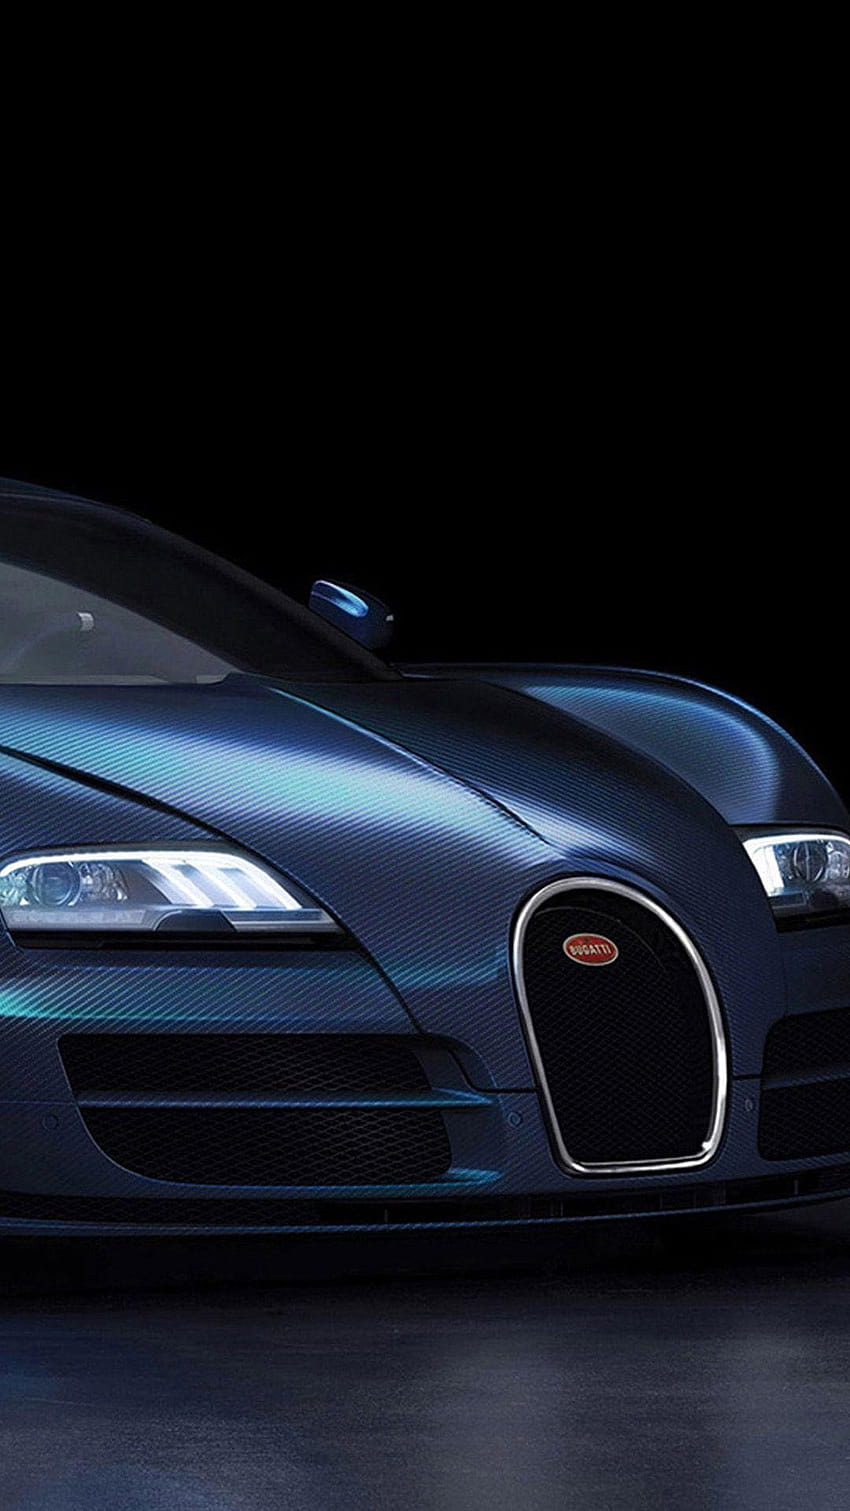 Bugatti Car For Android , bugatti cars HD phone wallpaper | Pxfuel